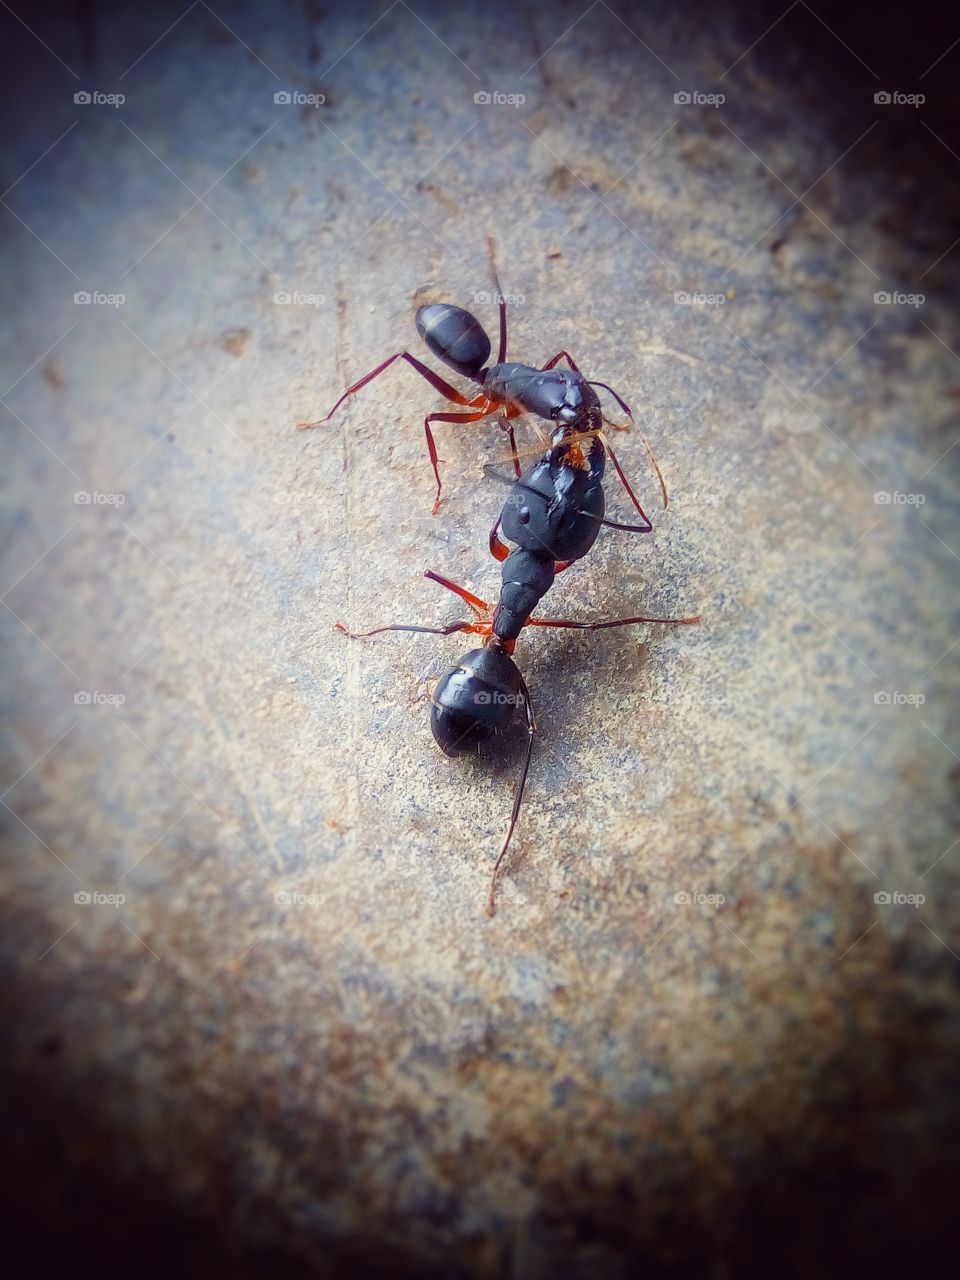 Ant's